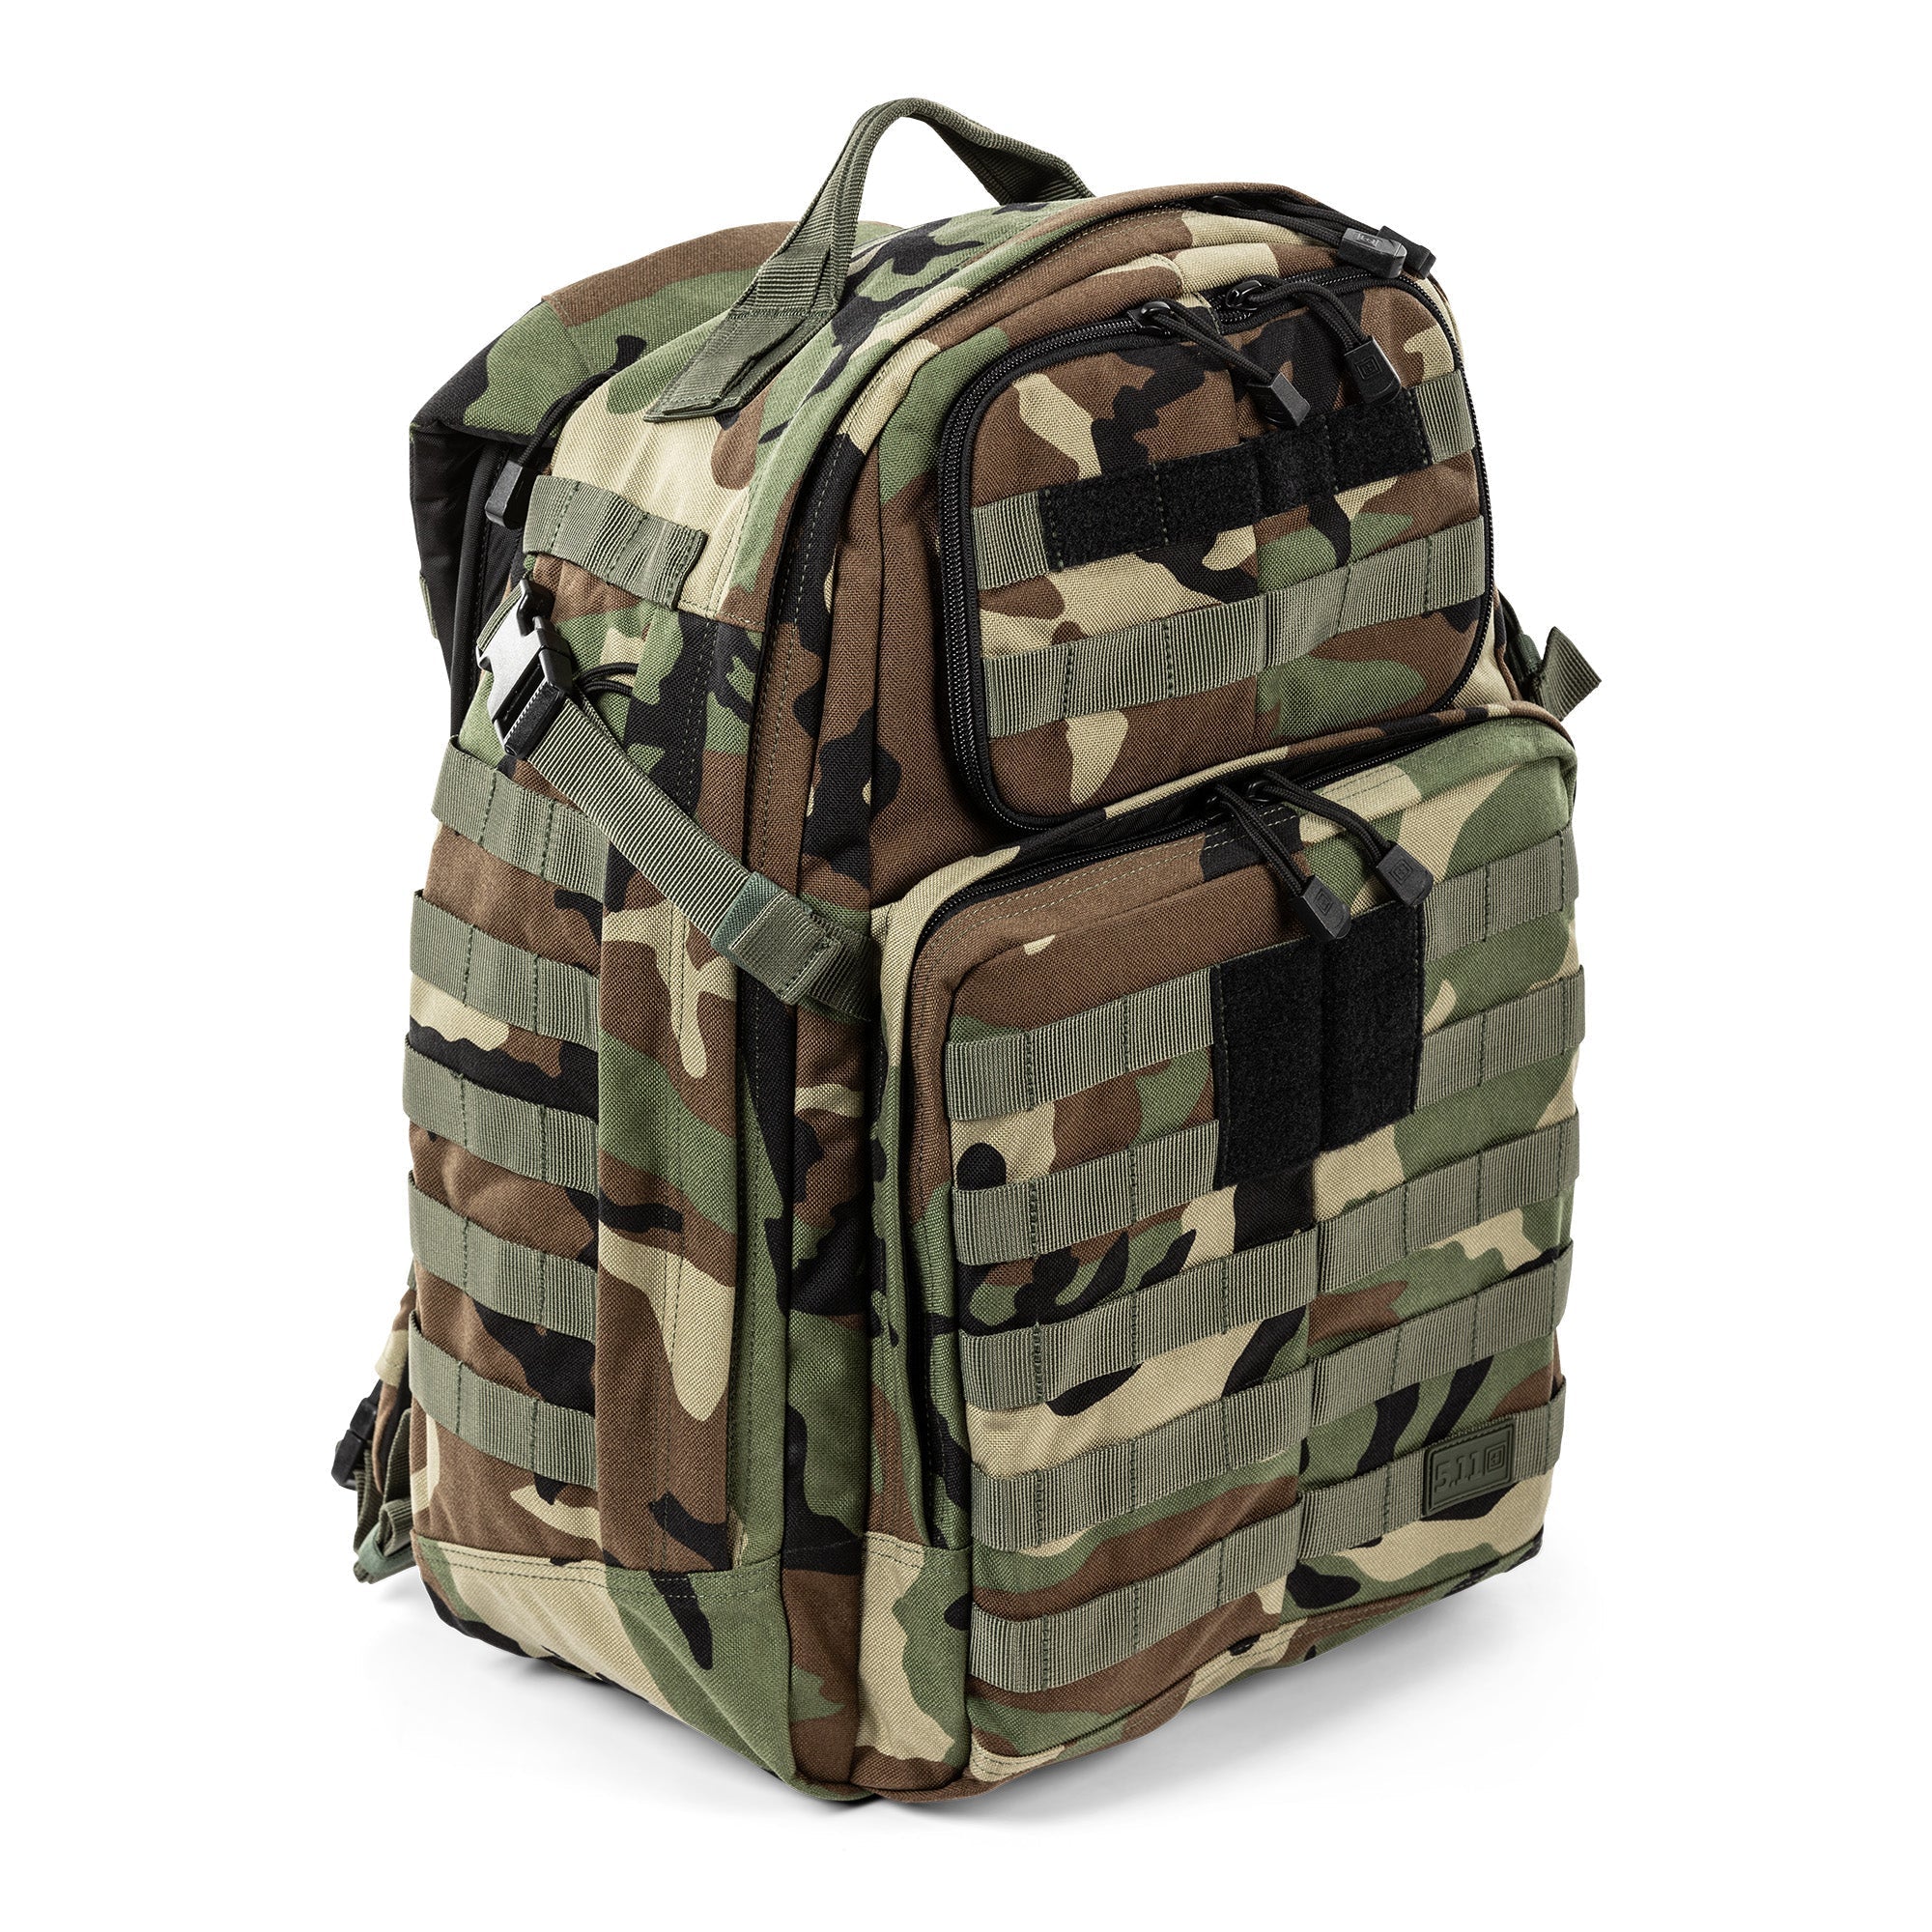 5.11 Tactical RUSH 24 2.0 Backpack 37L Woodland Camo Bags, Packs and Cases 5.11 Tactical Tactical Gear Supplier Tactical Distributors Australia